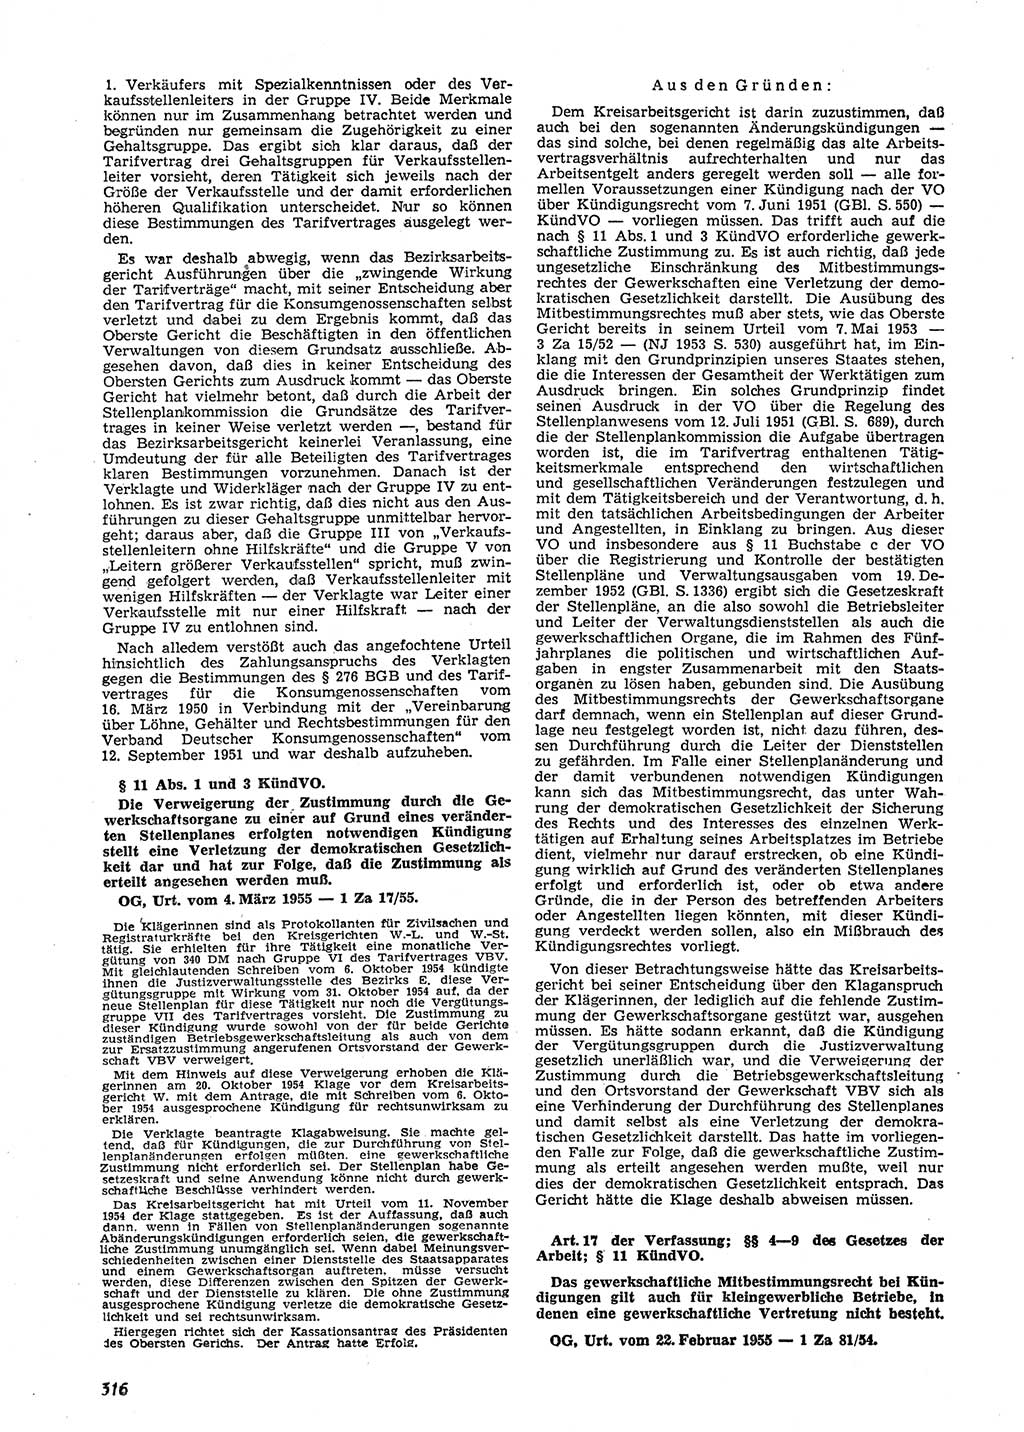 Neue Justiz (NJ), Zeitschrift für Recht und Rechtswissenschaft [Deutsche Demokratische Republik (DDR)], 9. Jahrgang 1955, Seite 316 (NJ DDR 1955, S. 316)